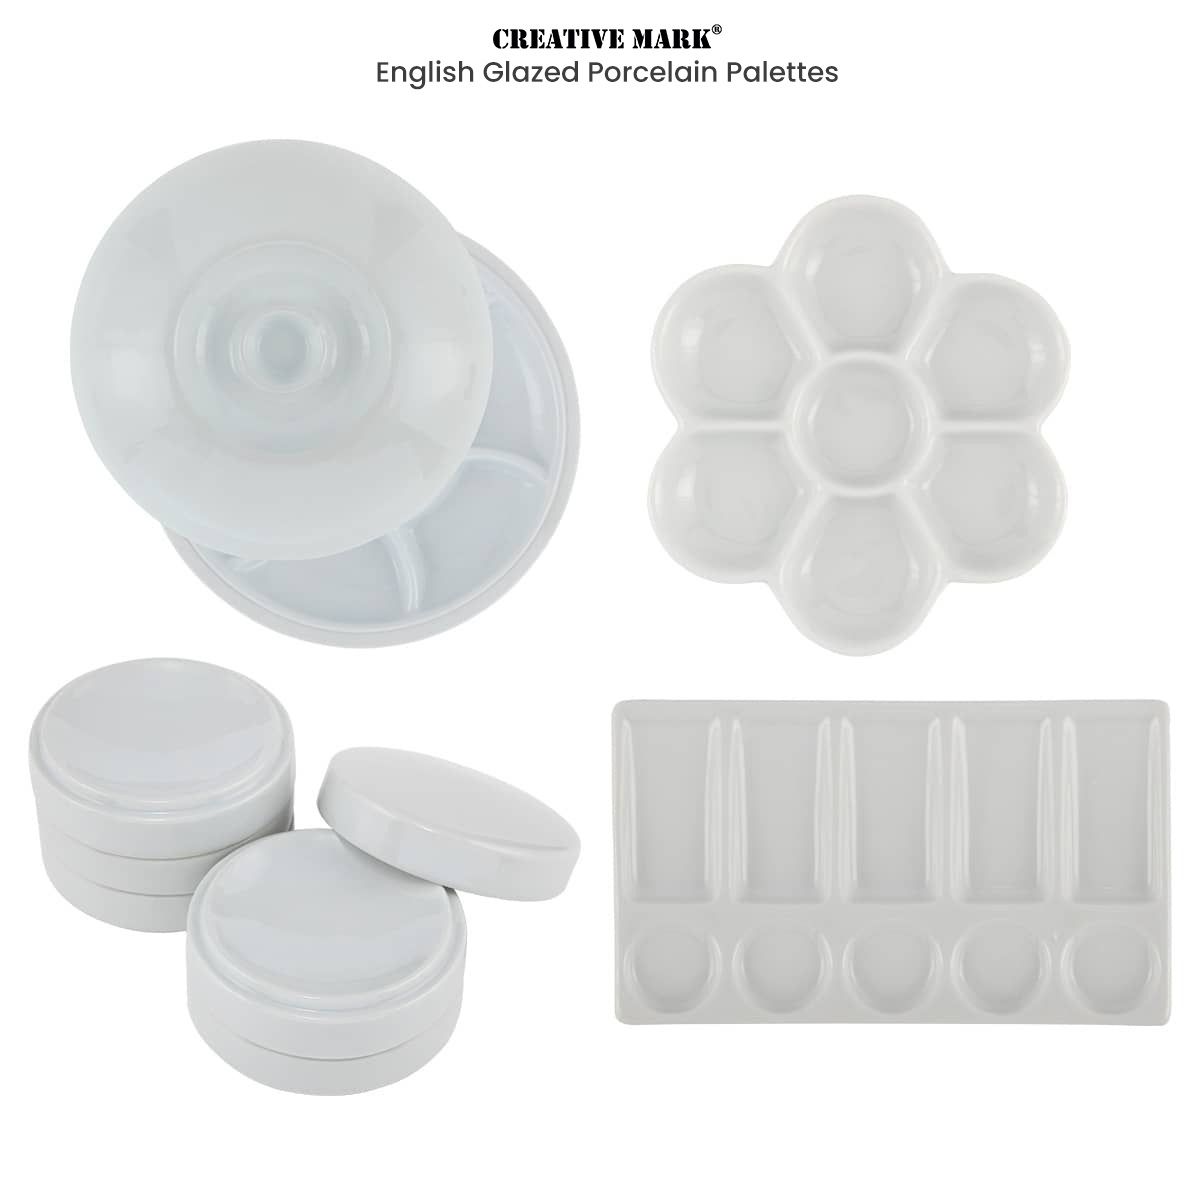 Creative Mark English Glazed Porcelain Palettes